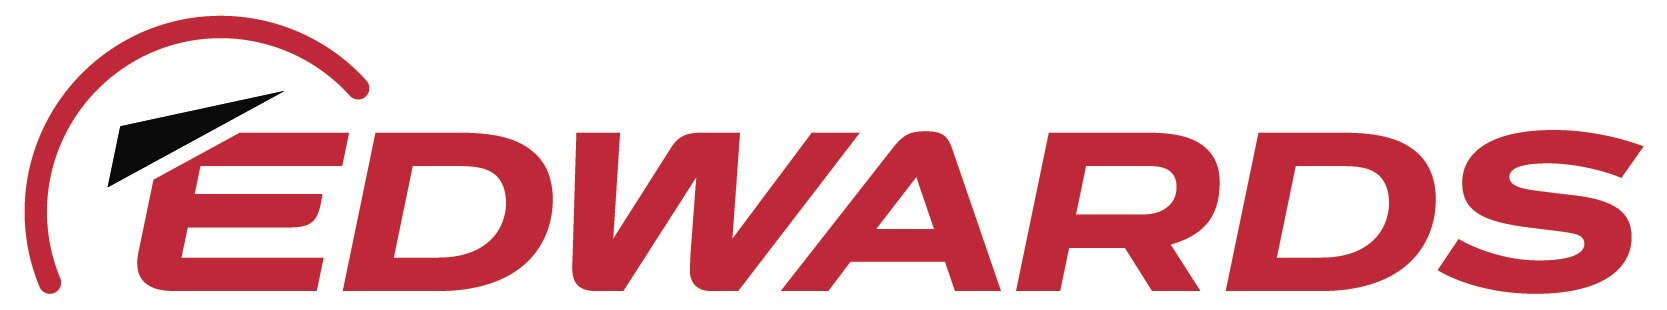 Edwards Vacuum logo